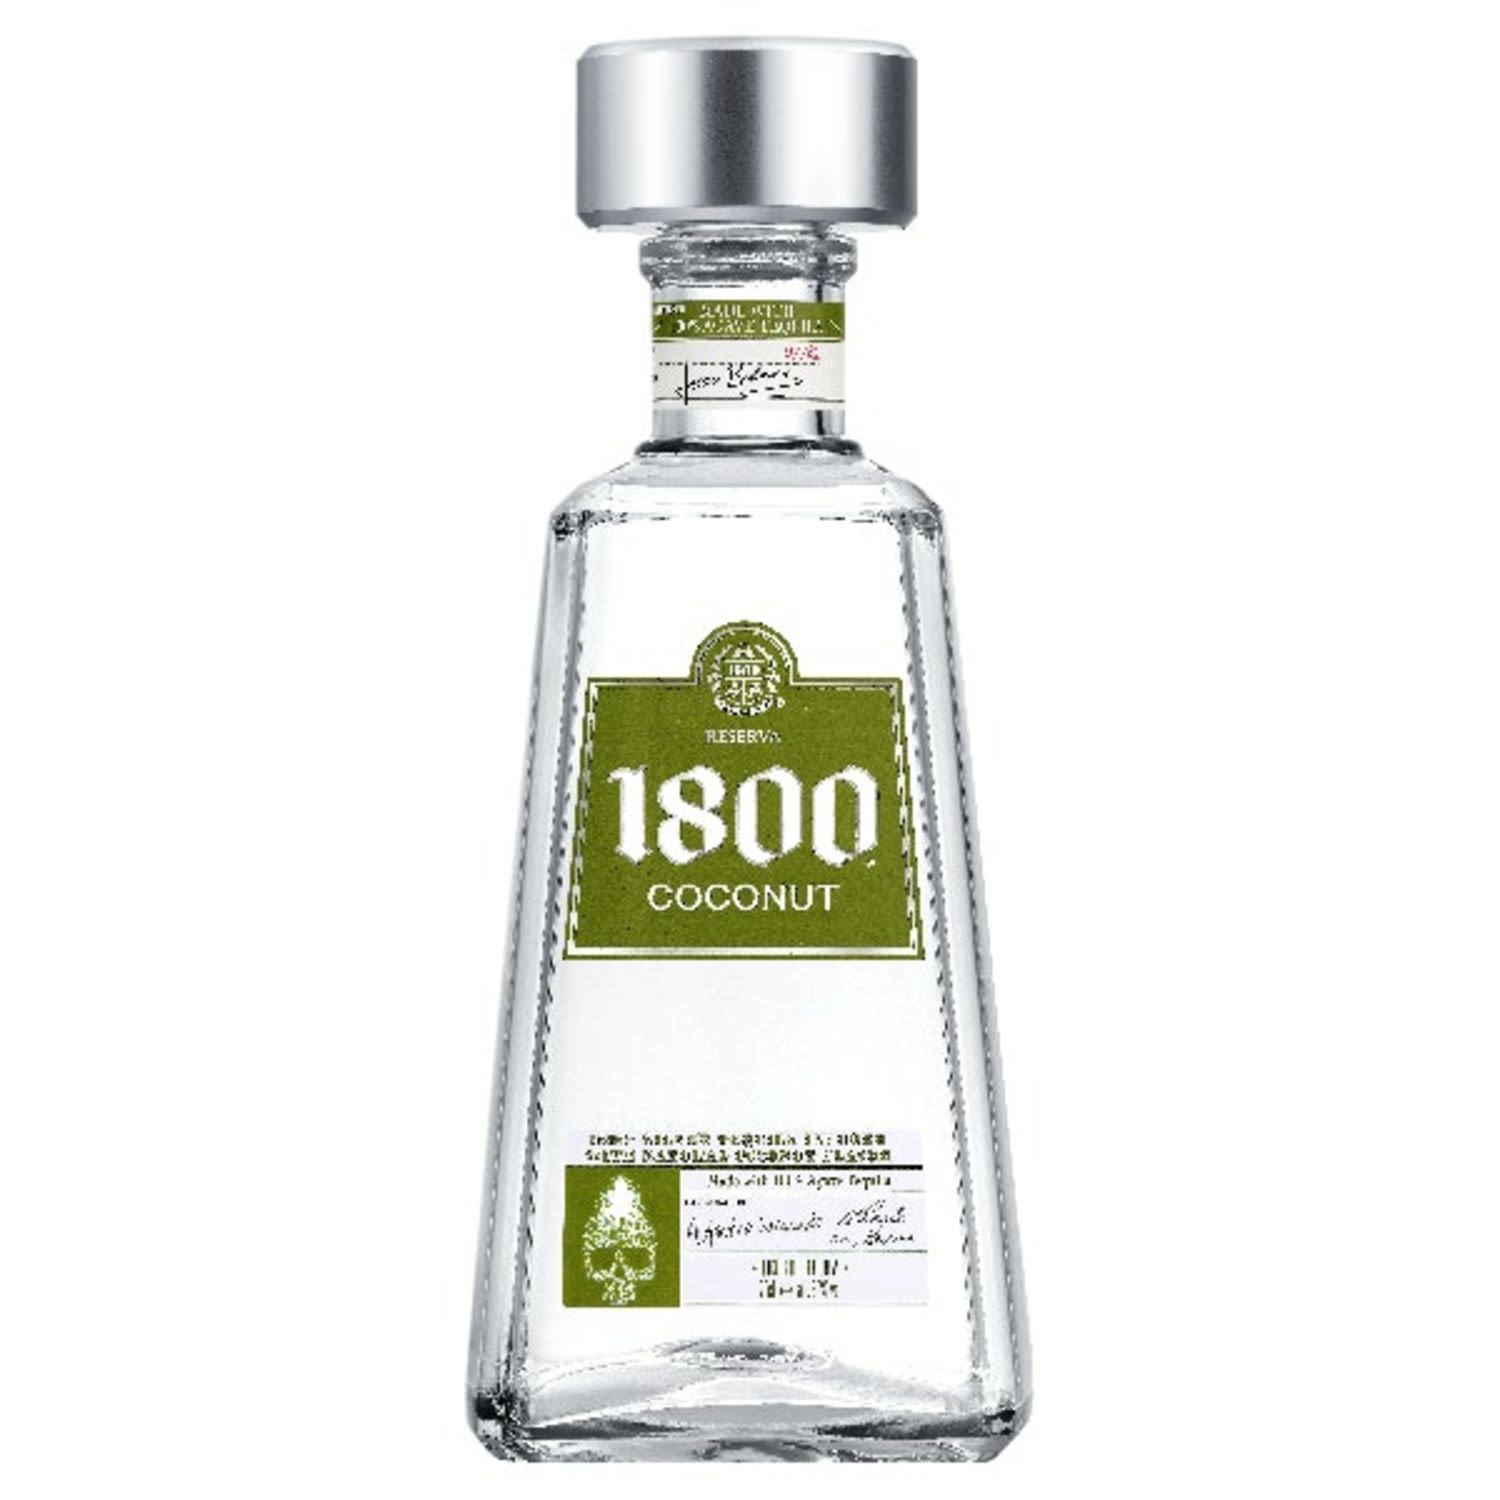 1800 Coconut Tequila 700mL Bottle